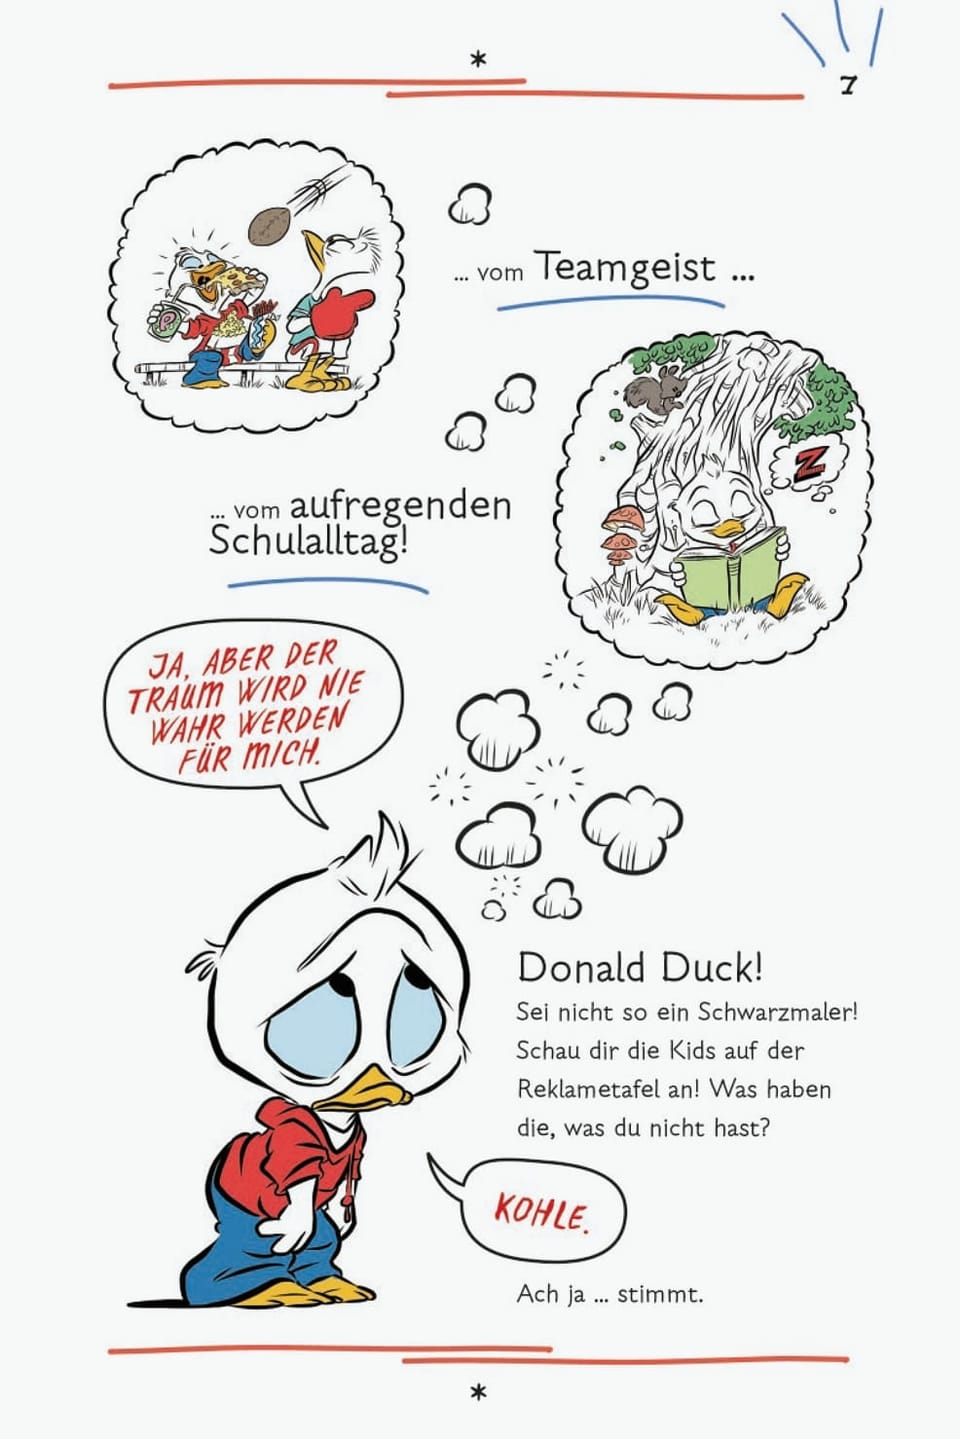 Abbildug aus einer Graphic Novel mit Donald Duck.